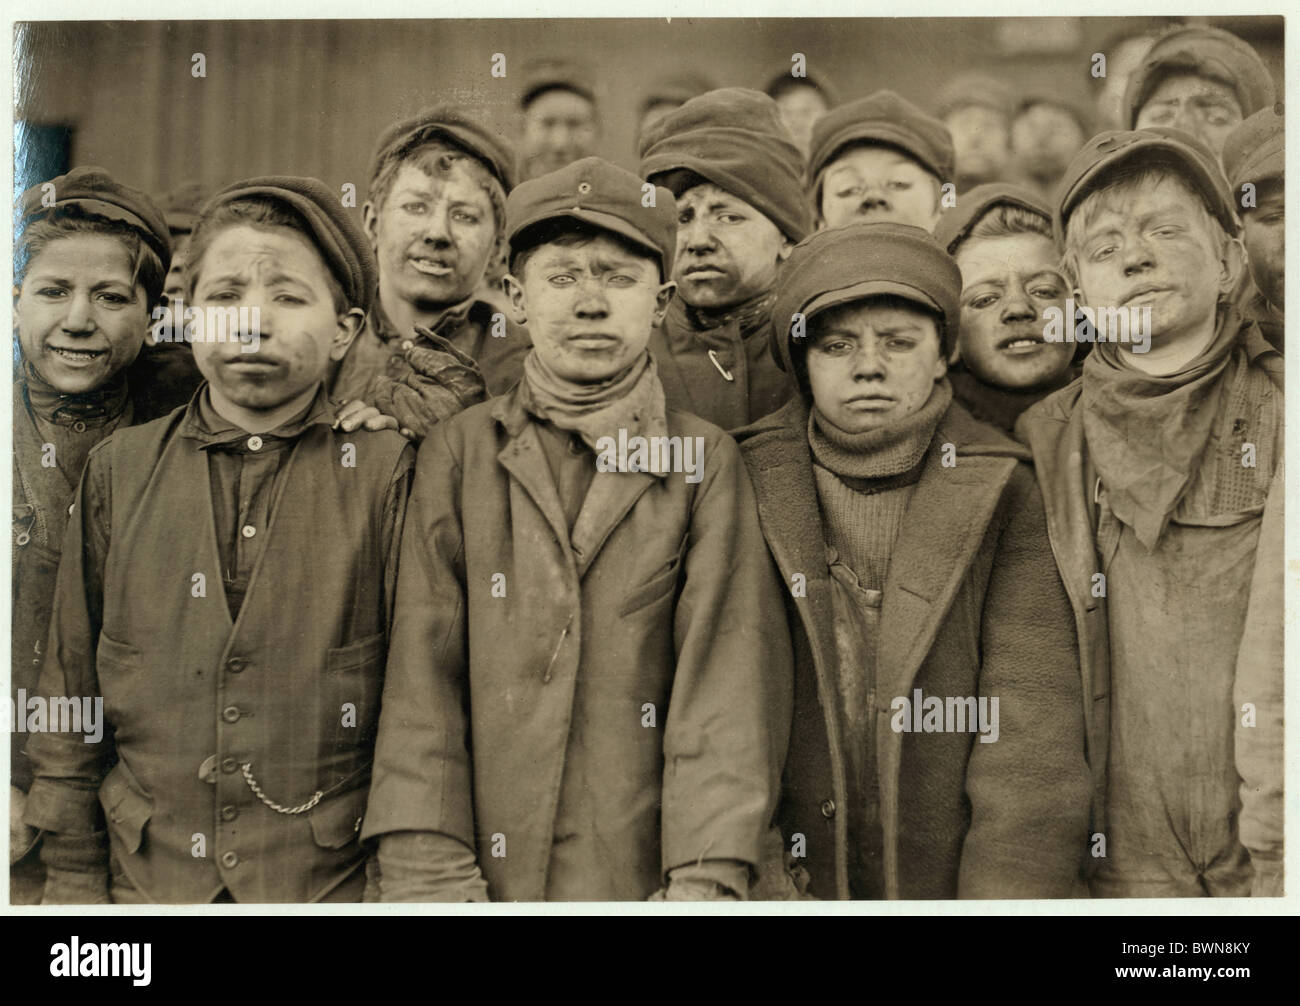 Les garçons disjoncteur Hughestown mine de charbon arrondissement portrait de l'industrie group USA Amérique États-Unis Amérique du Nord Pi Banque D'Images